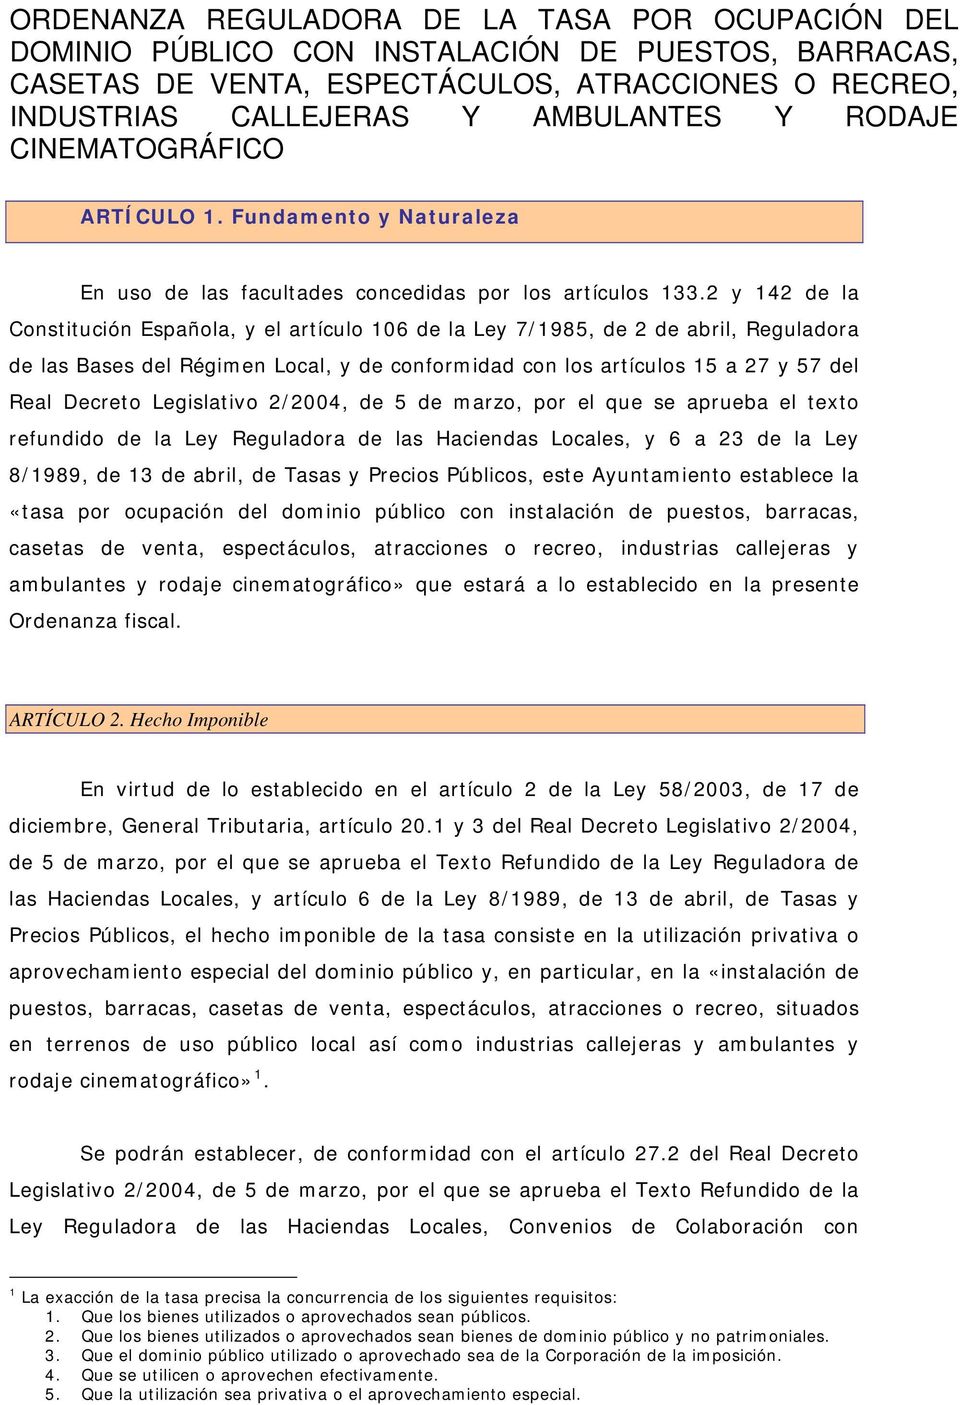 2 y 142 de la Constitución Española, y el artículo 106 de la Ley 7/1985, de 2 de abril, Reguladora de las Bases del Régimen Local, y de conformidad con los artículos 15 a 27 y 57 del Real Decreto